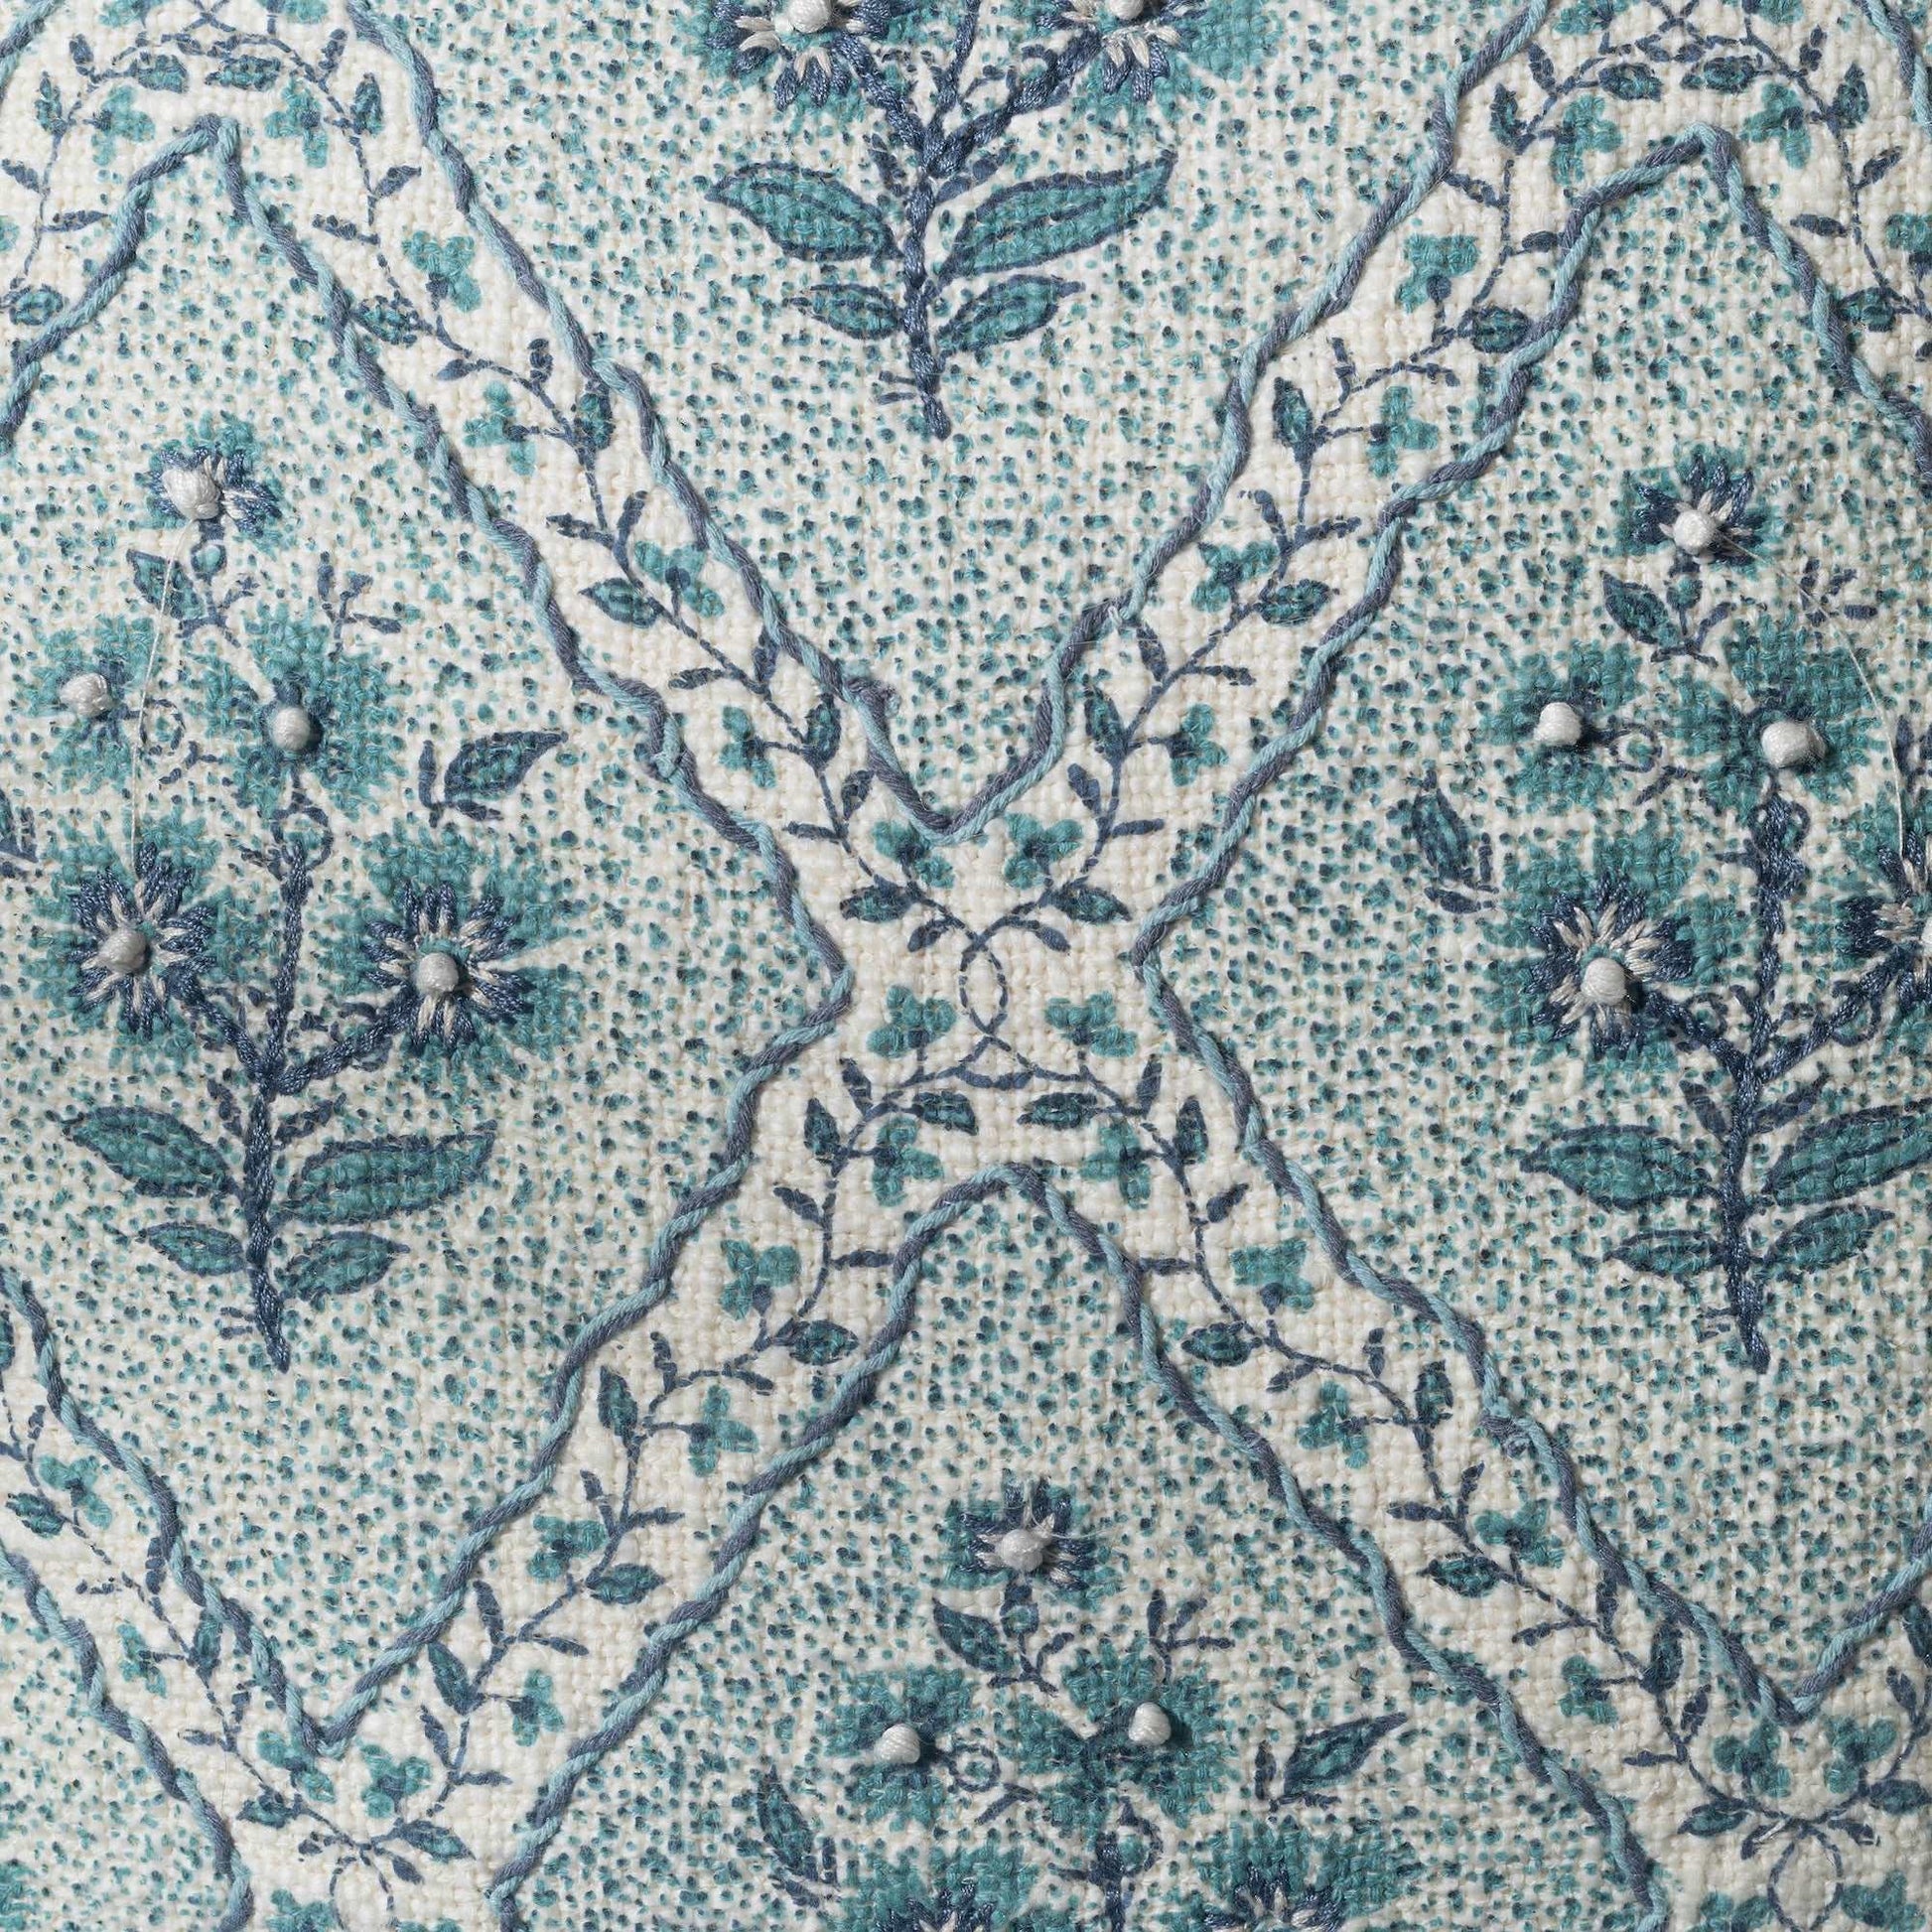 Blue Cotton Printed & Dori Work Cushion Cover